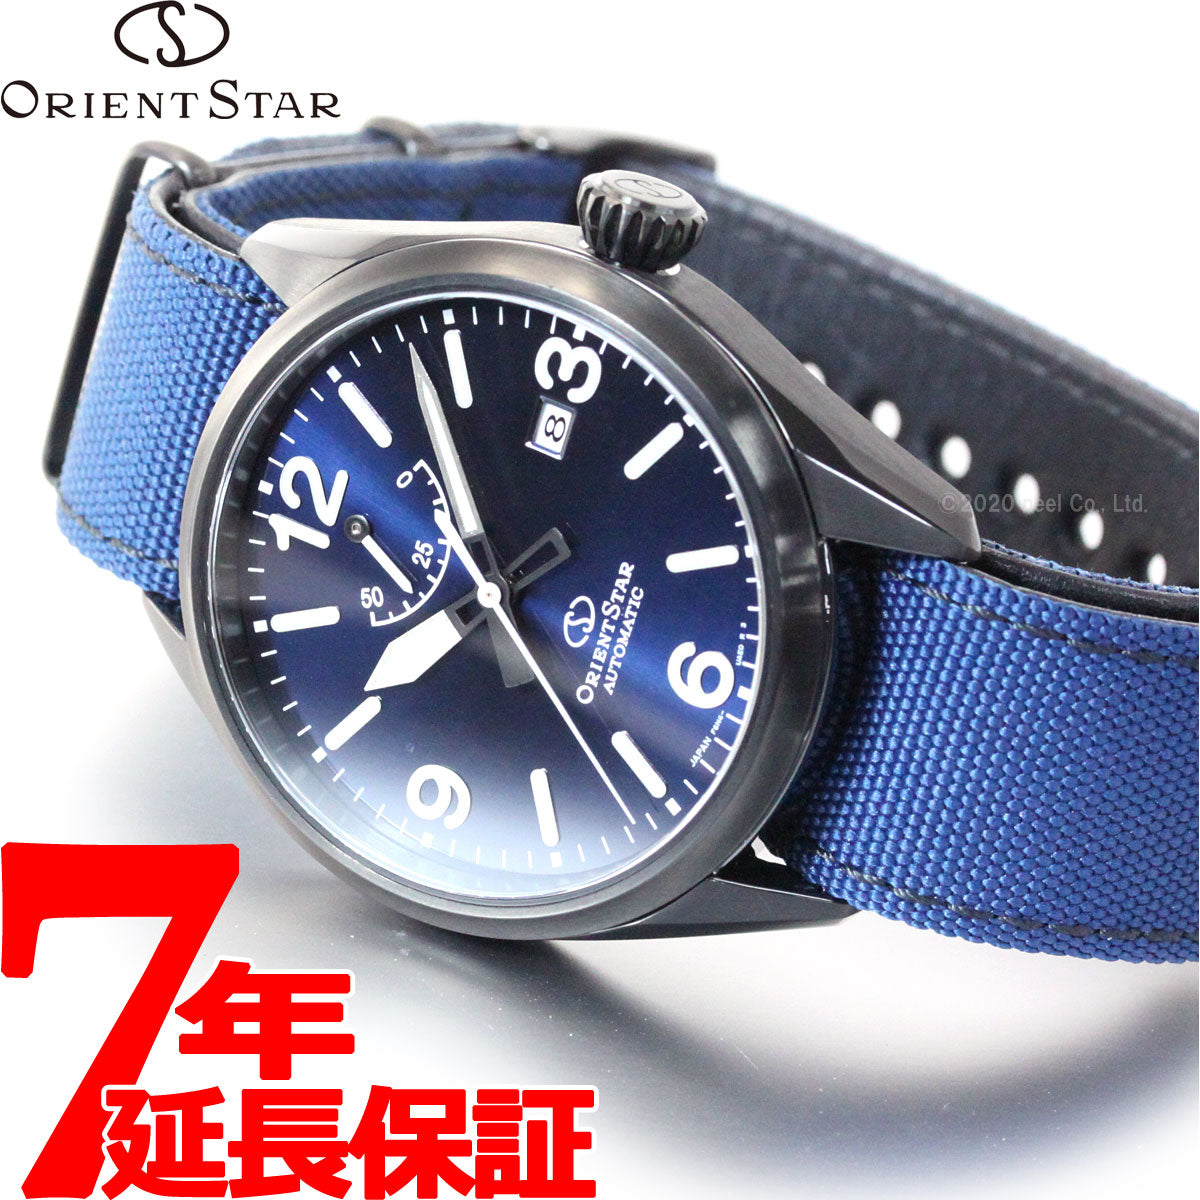 オリエントスター ORIENT STAR 腕時計 メンズ 自動巻き メカニカル スポーツ アウトドア RK-AU0207L